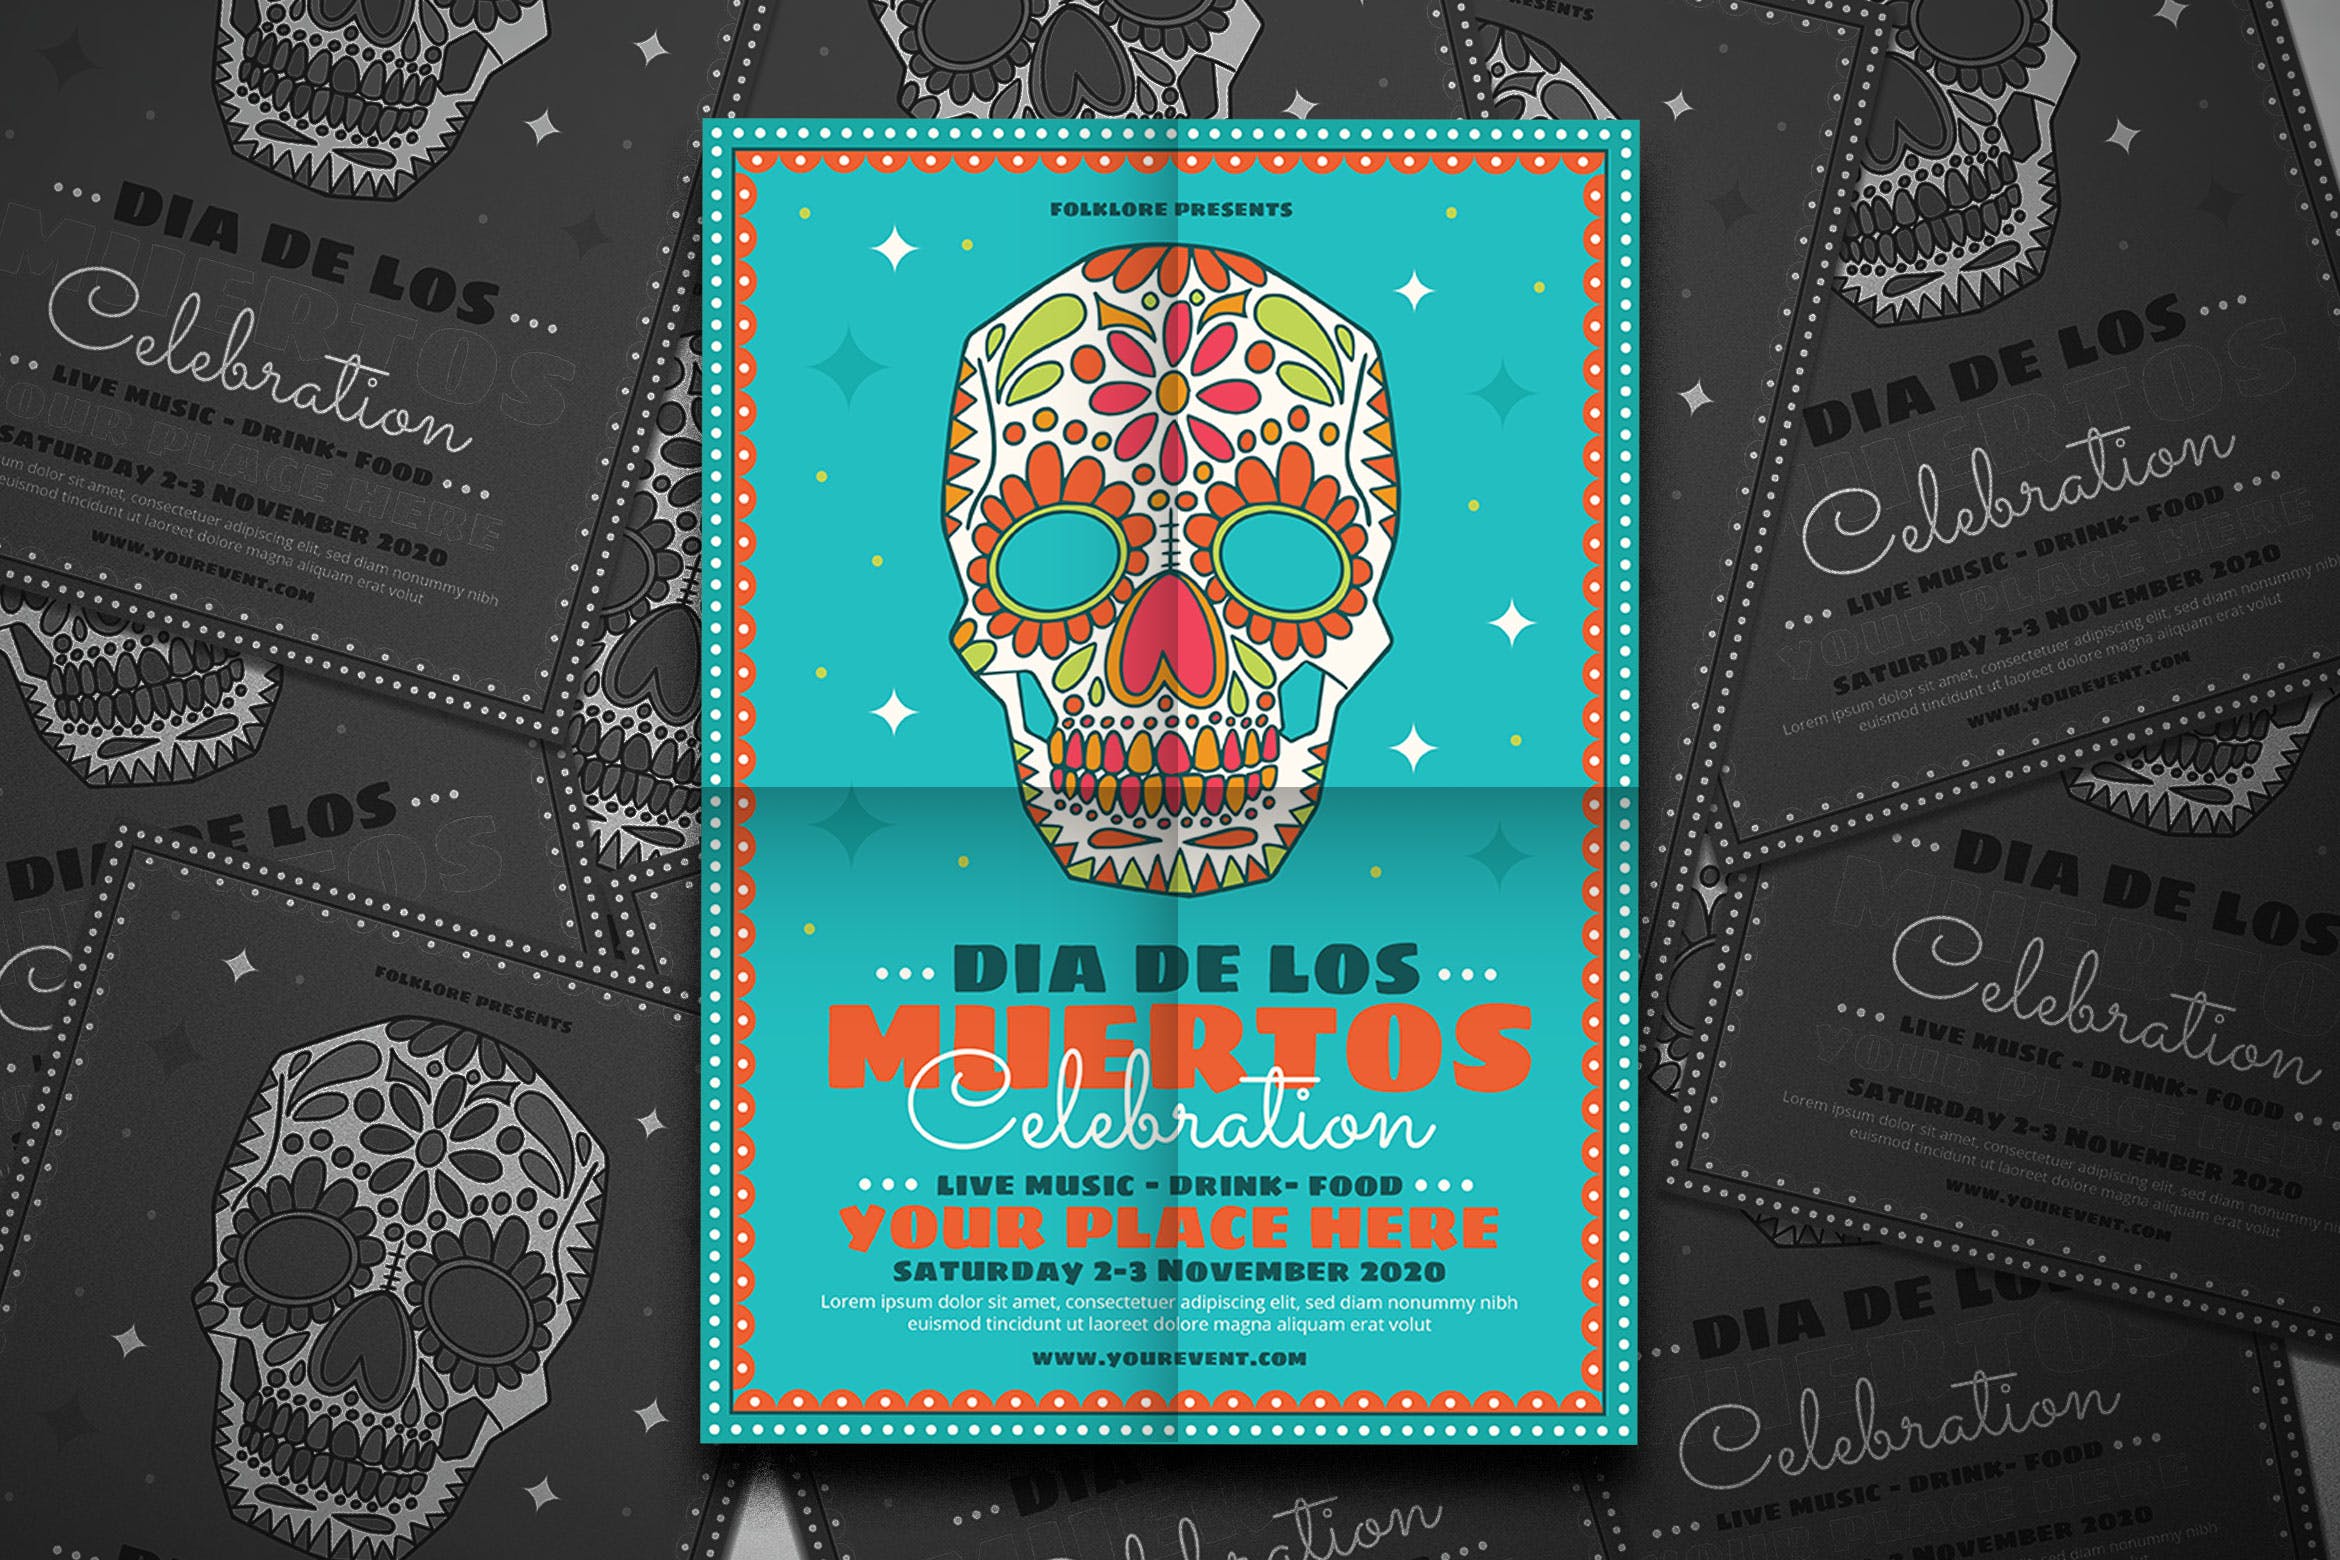 墨西哥亡灵节现场音乐会表演宣传海报设计模板 Dia De Los Muertos Festival插图